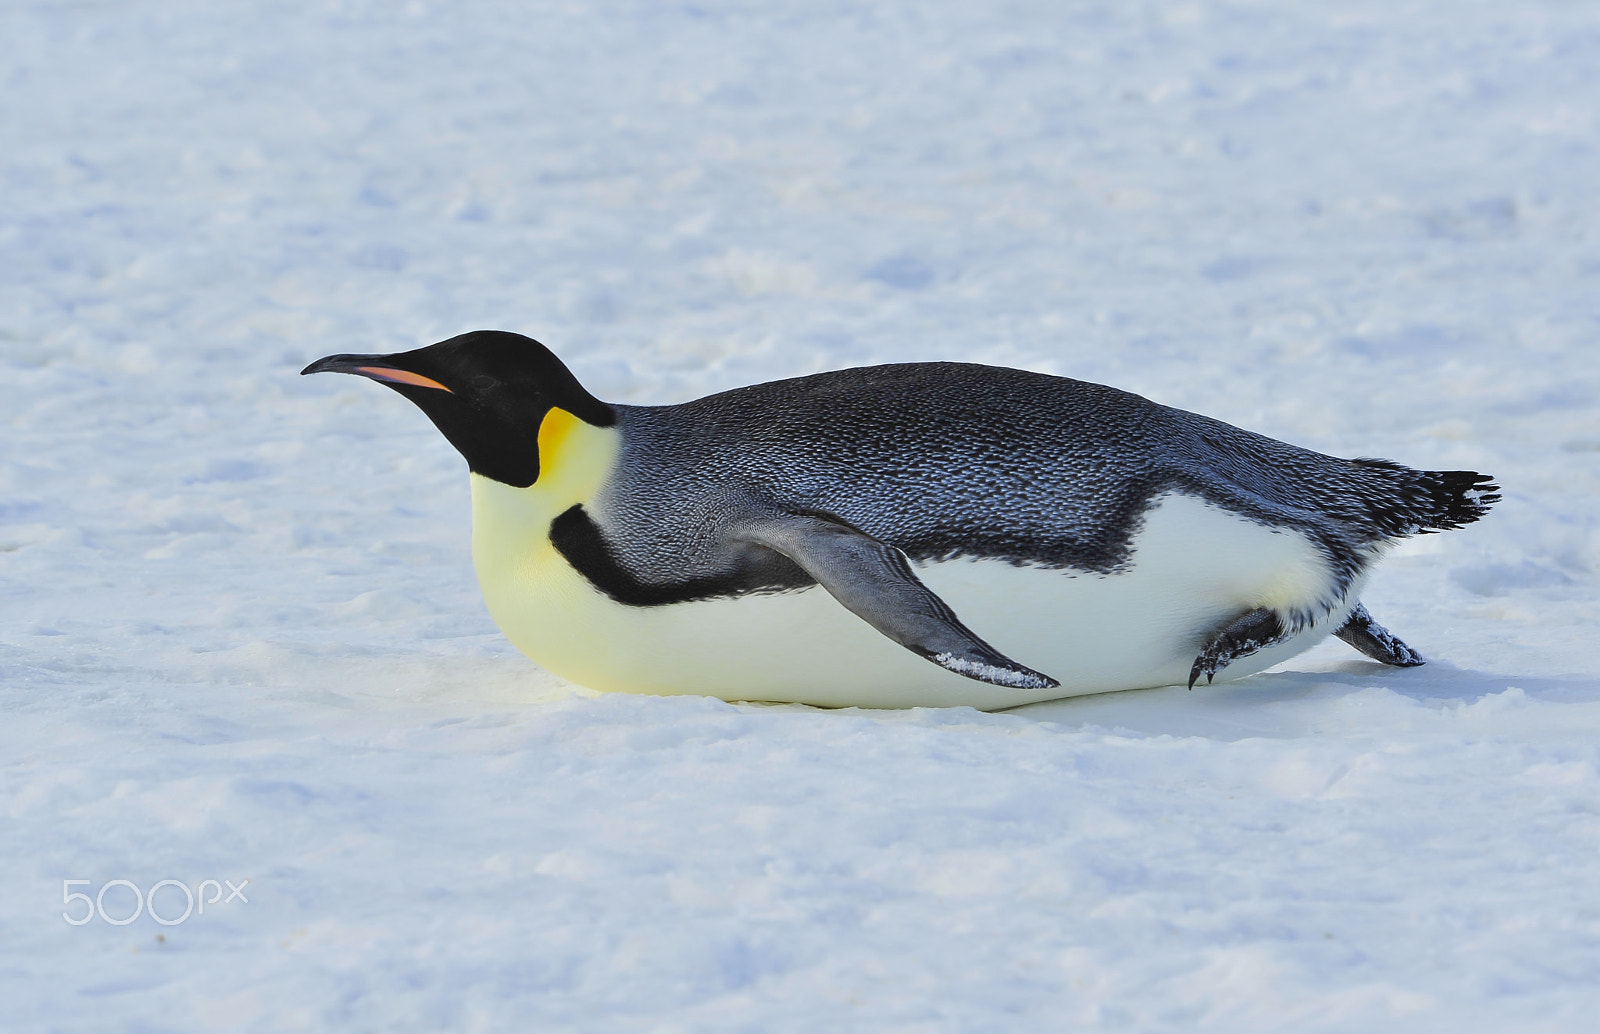 Nikon AF Nikkor 80-400mm F4.5-5.6D ED VR sample photo. Emperor penguin on the snow photography